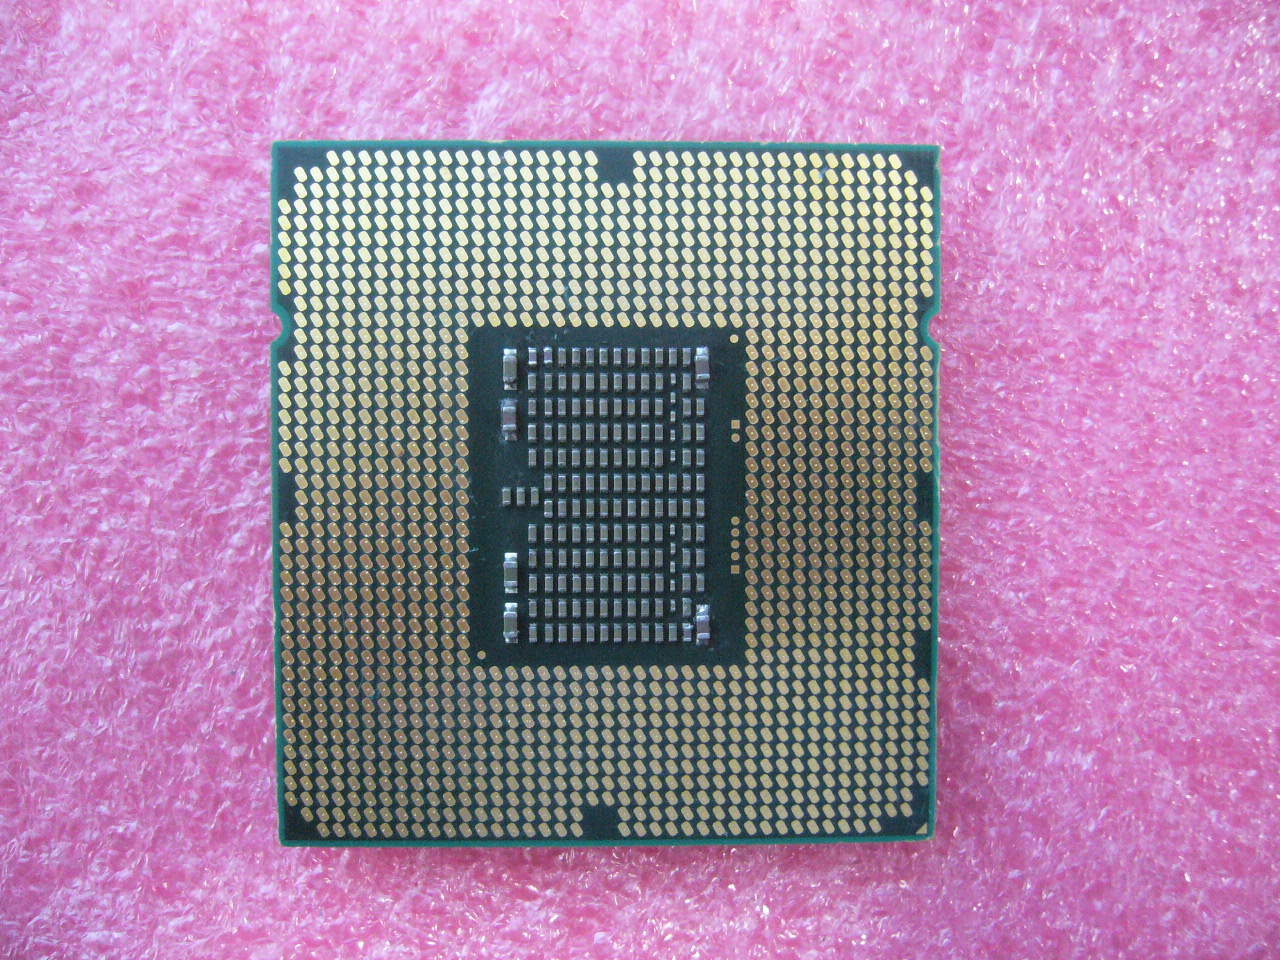 QTY 1x INTEL Quad-Cores Xeon CPU X5672 3.2GHZ/12MB LGA1366 SLBYK - Click Image to Close